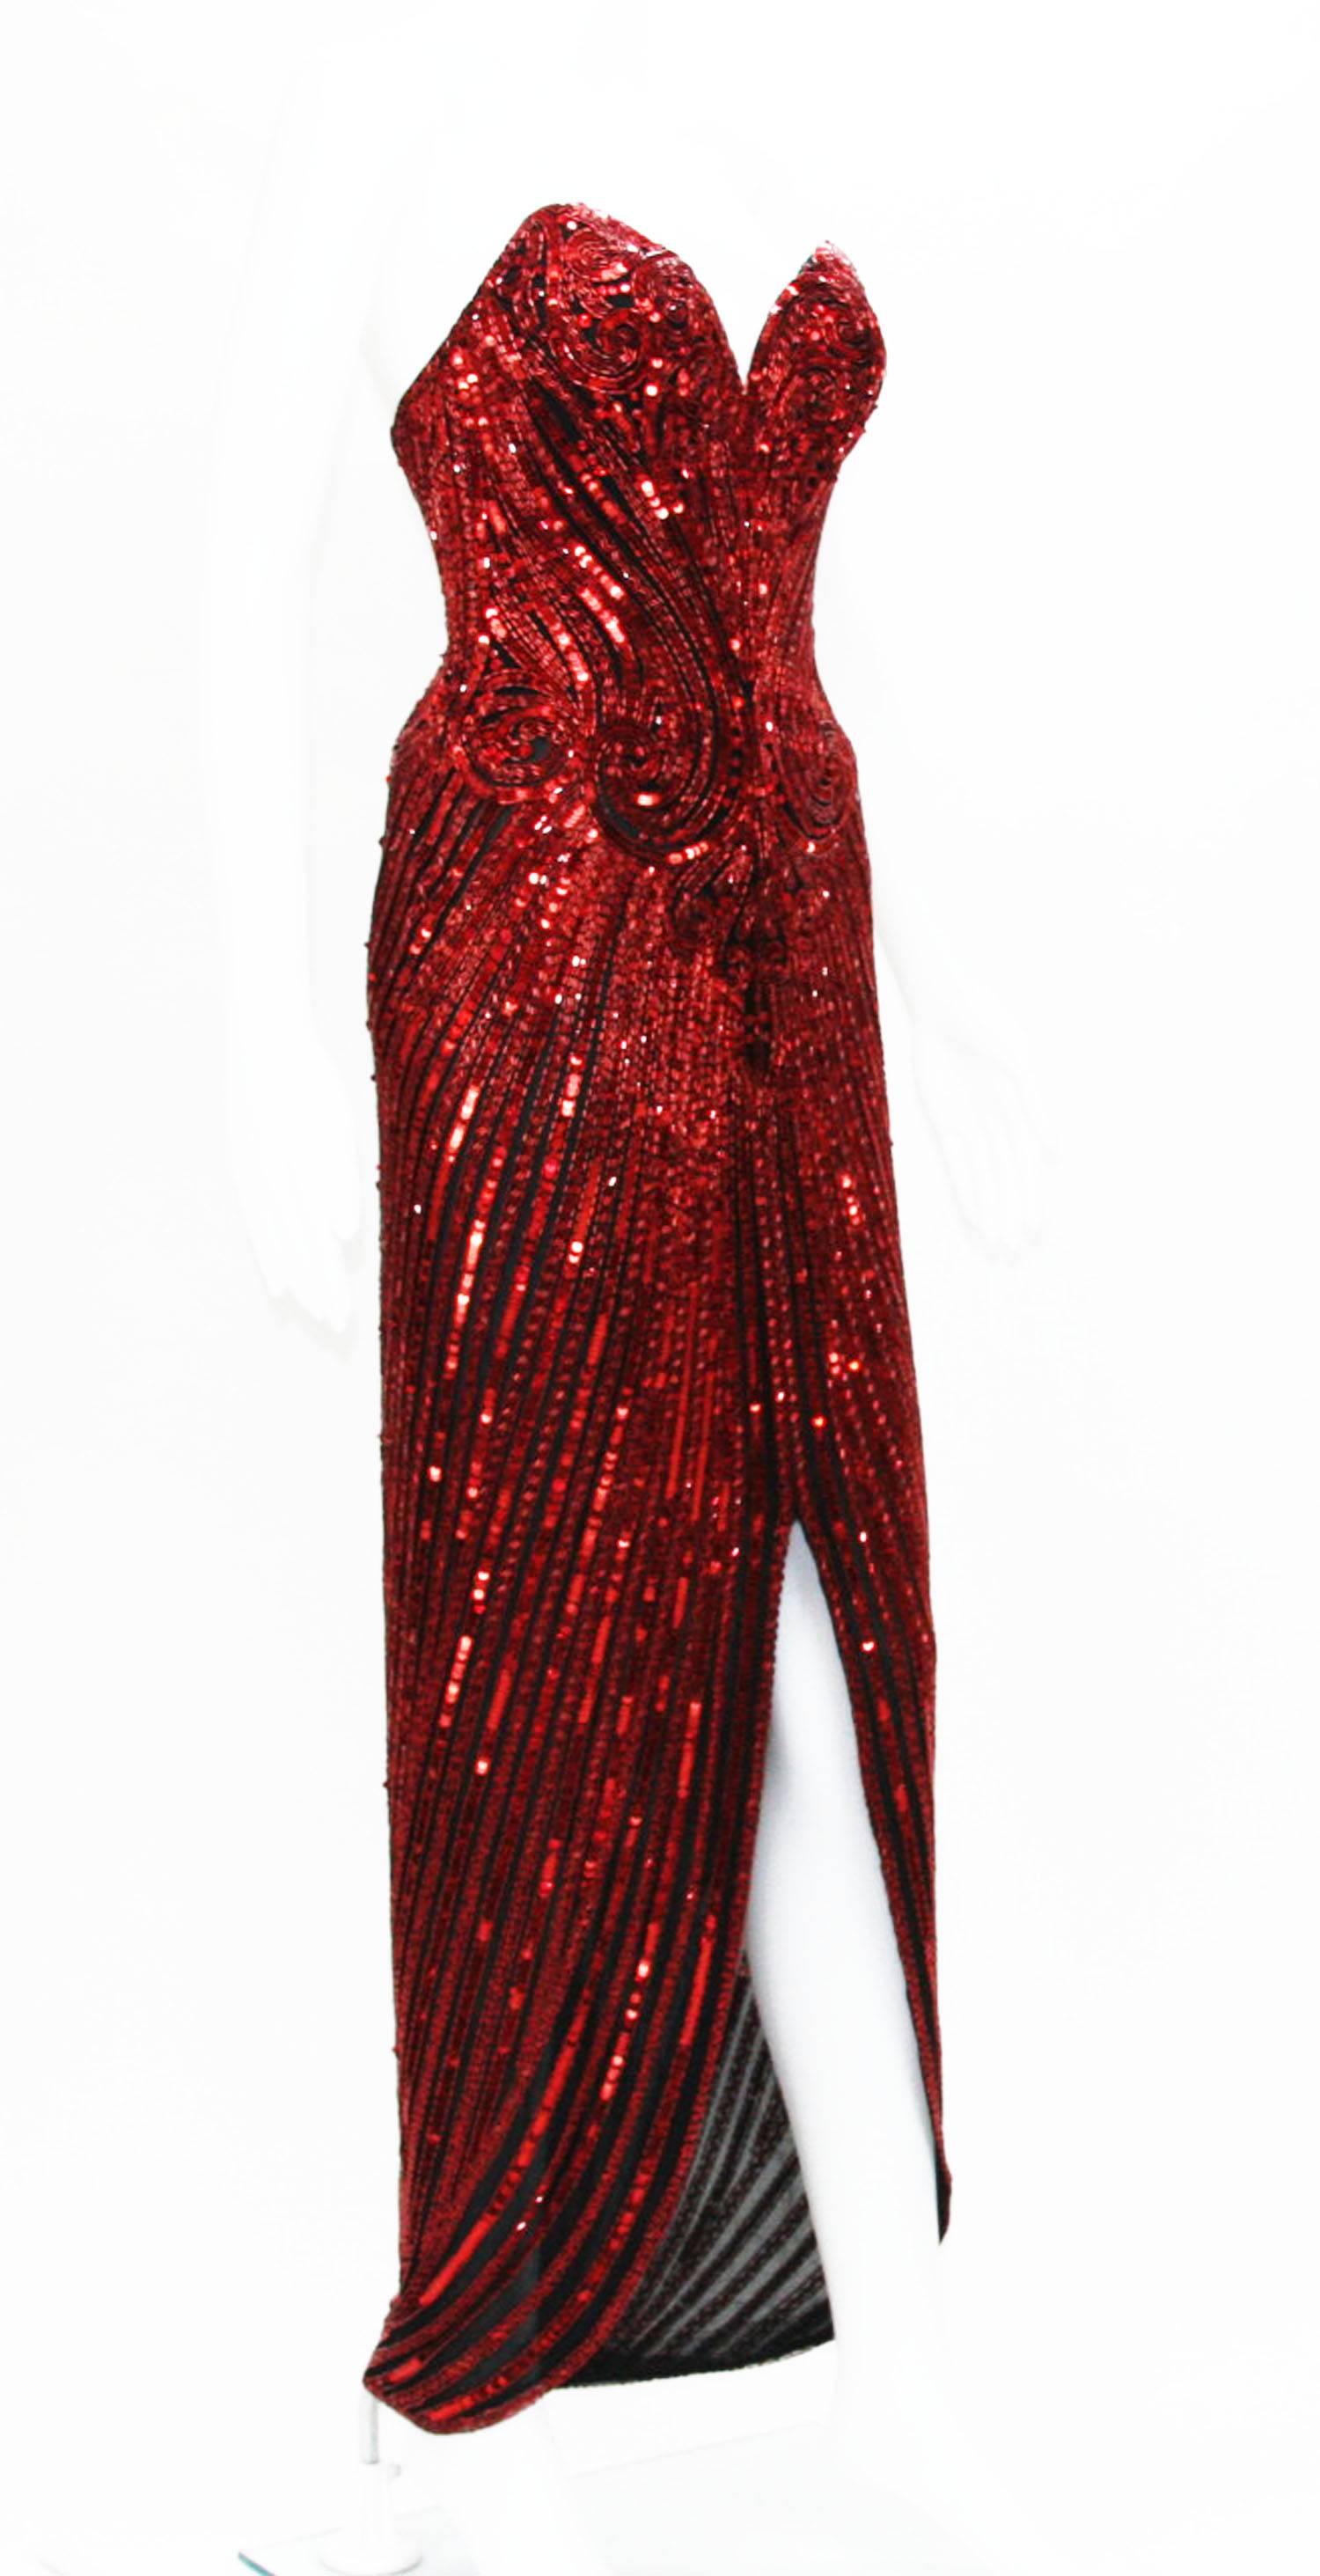 Ein prächtiges Bob-Mackie-Kleid von 1982.
Designer Größe 6. 
Farbe - Dunkelrot.
Verschönert mit Perlen und Pailletten über dem schwarzen Netz.
Korsett und Taillenband. Vollständig gefüttert.
Maße: Büste - 32 Zoll, Taille - 26 Zoll, Hüfte - 34 Zoll.